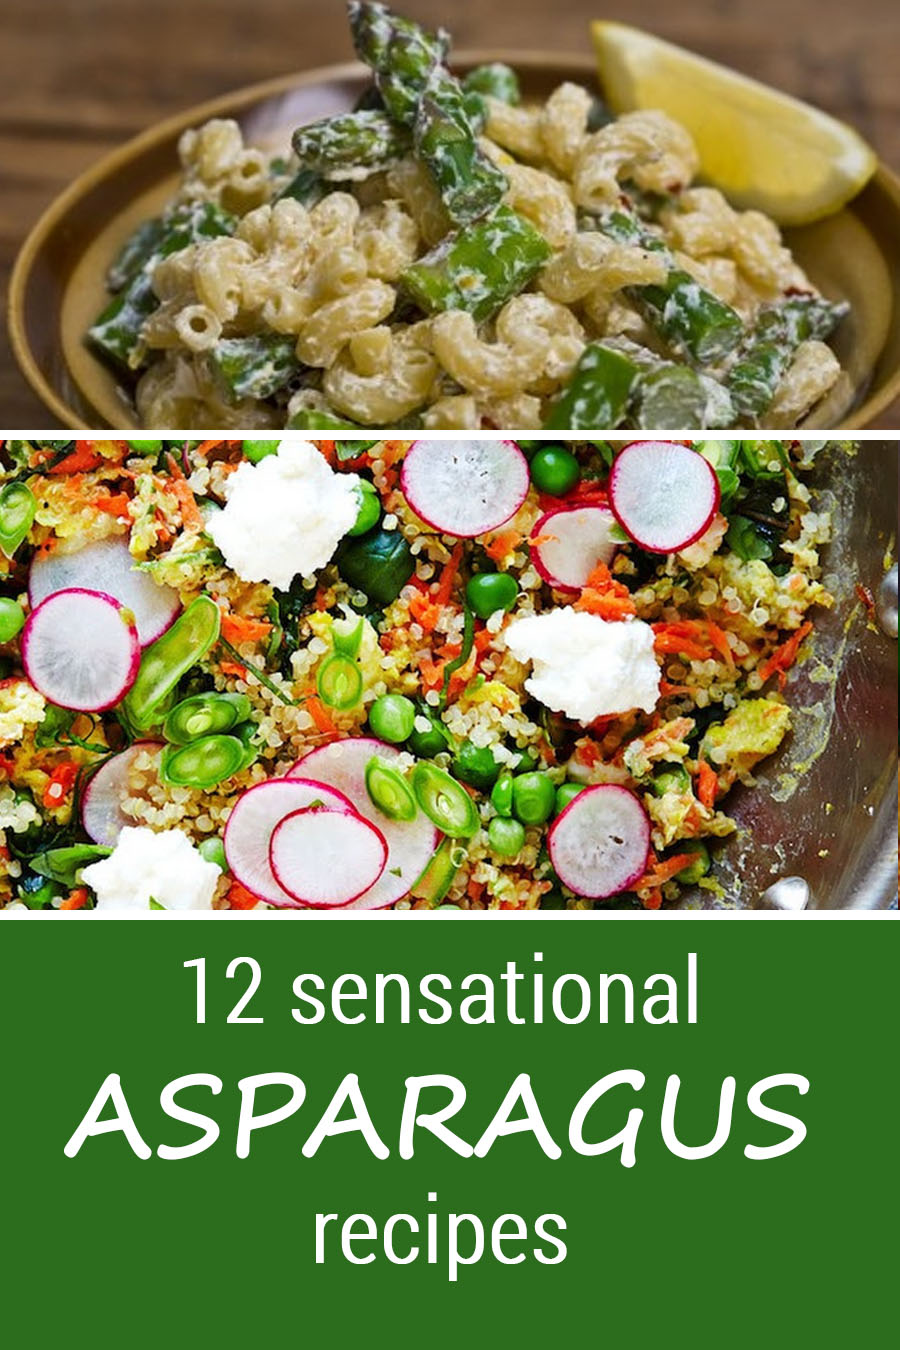 12 Sensational asparagus recipes